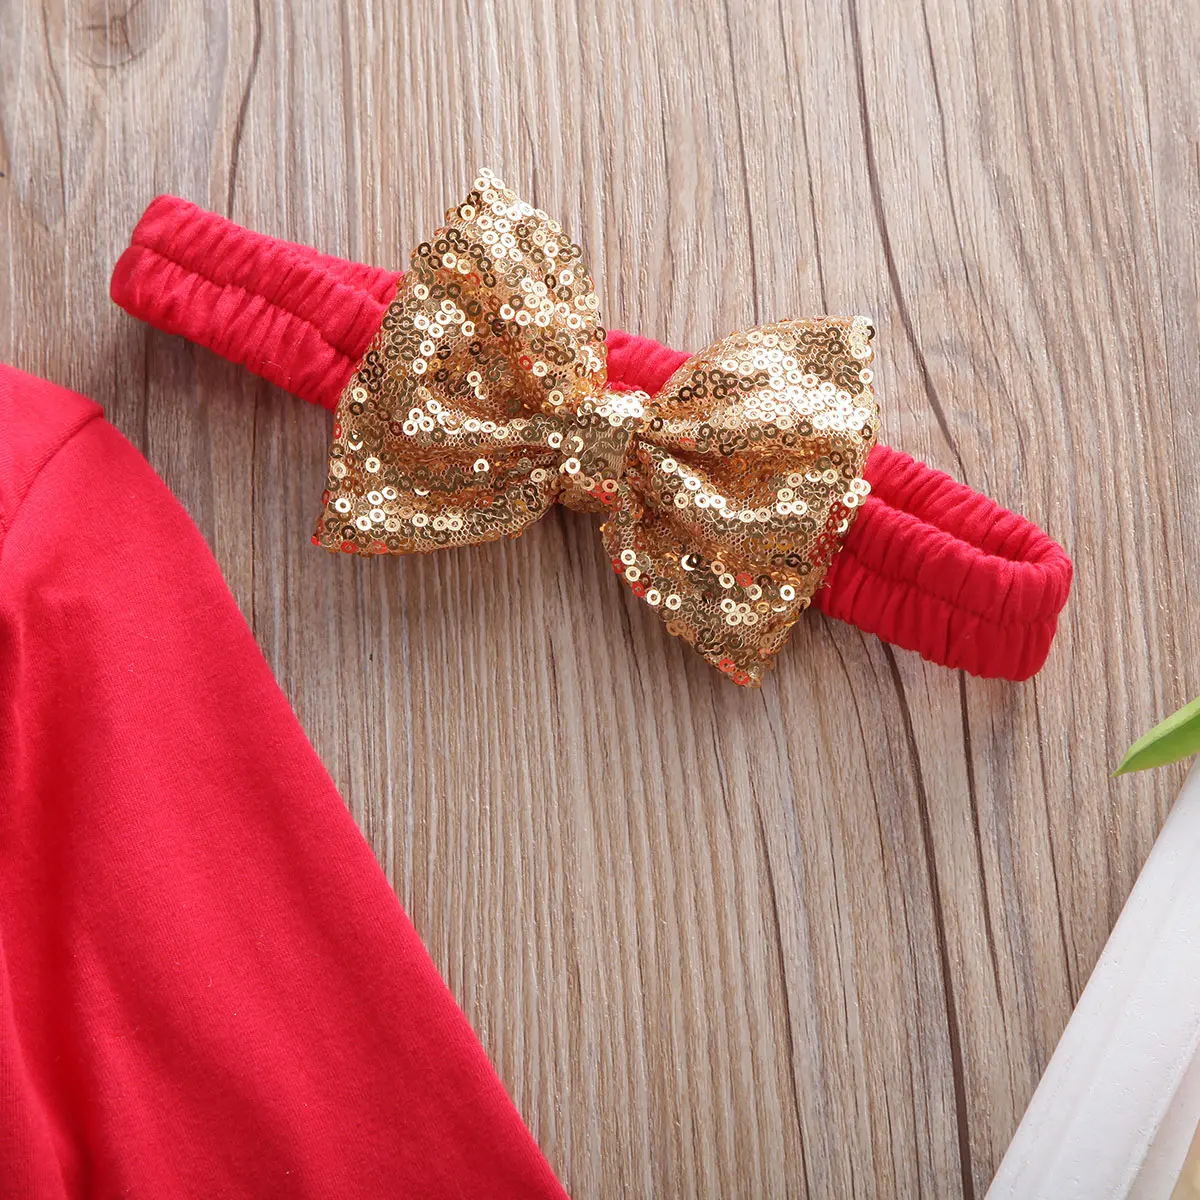 Focusnorm/комплект из 3 предметов для новорожденных девочек 0-18 месяцев, красный комбинезон с надписью «My 1st Christmas», юбка-пачка повязка на голову, комплект одежды для девочек